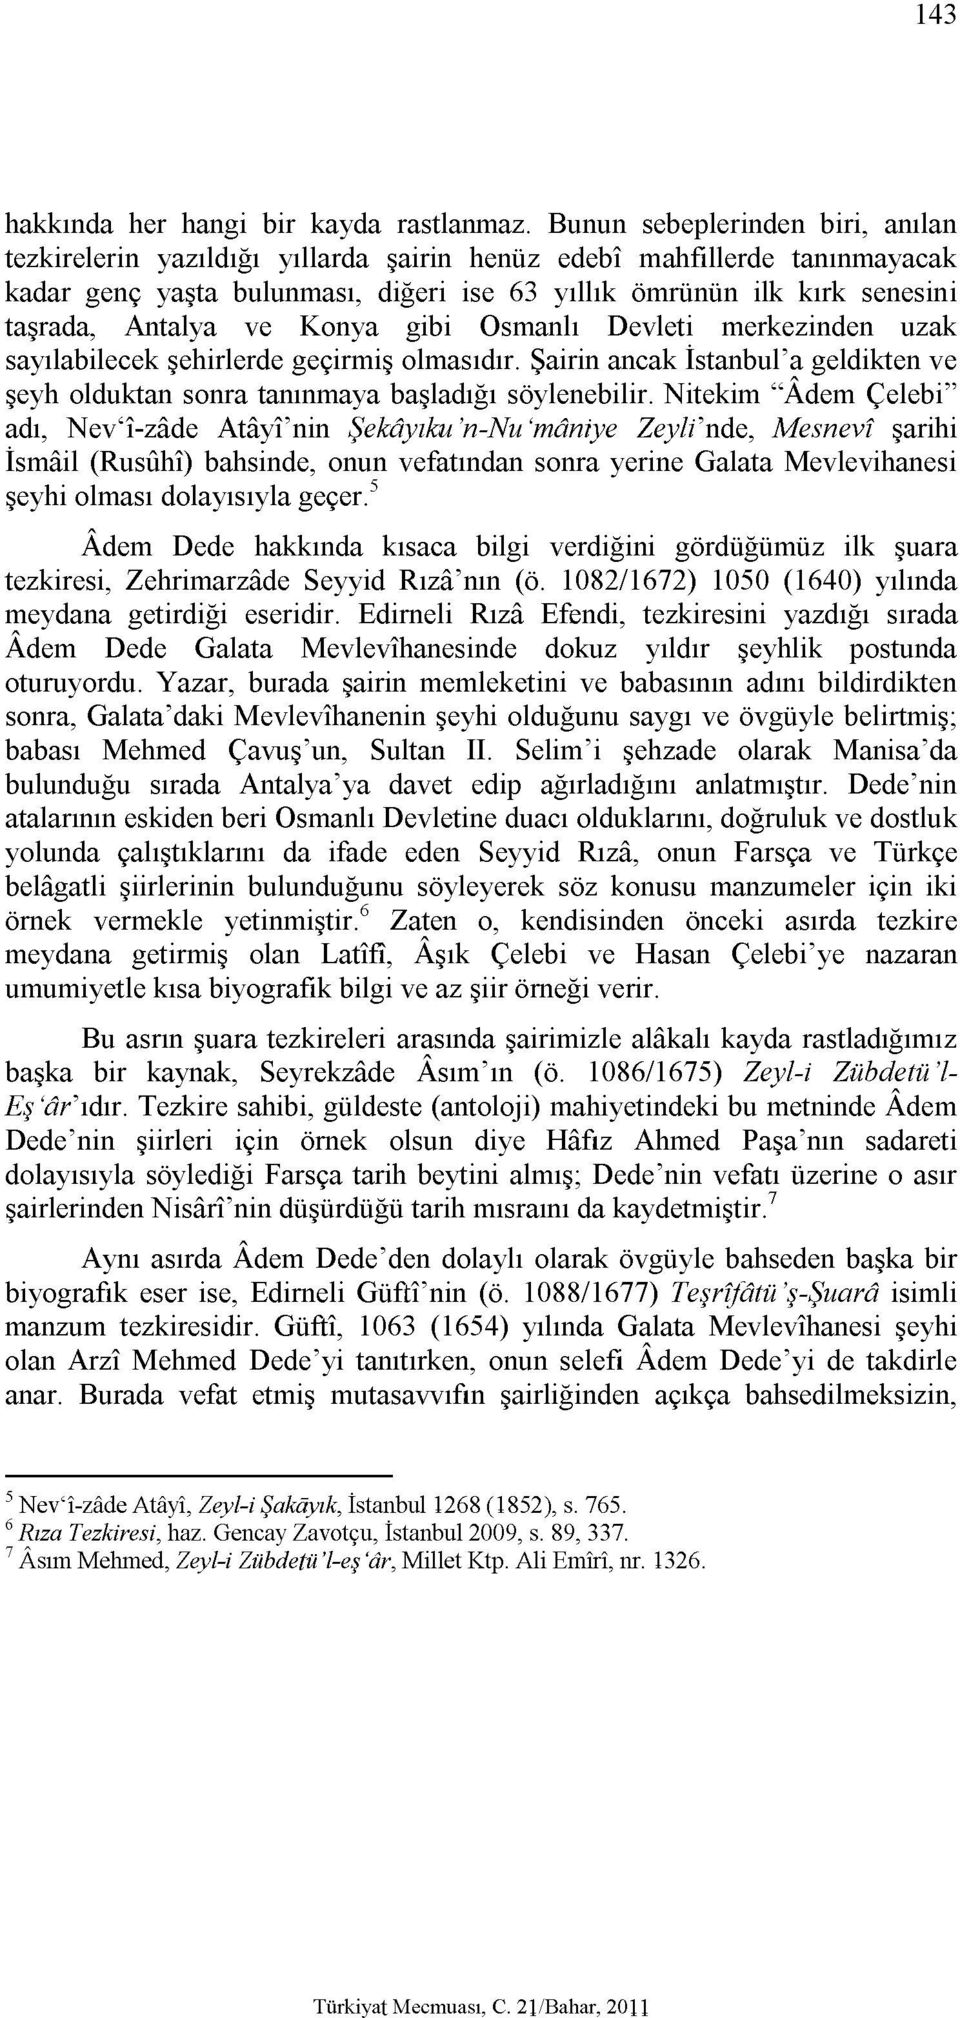 Antalya ve Konya gibi Osmanlı Devleti merkezinden uzak sayılabilecek şehirlerde geçirmiş olmasıdır. Şairin ancak İstanbul'a geldikten ve şeyh olduktan sonra tanınmaya başladığı söylenebilir.